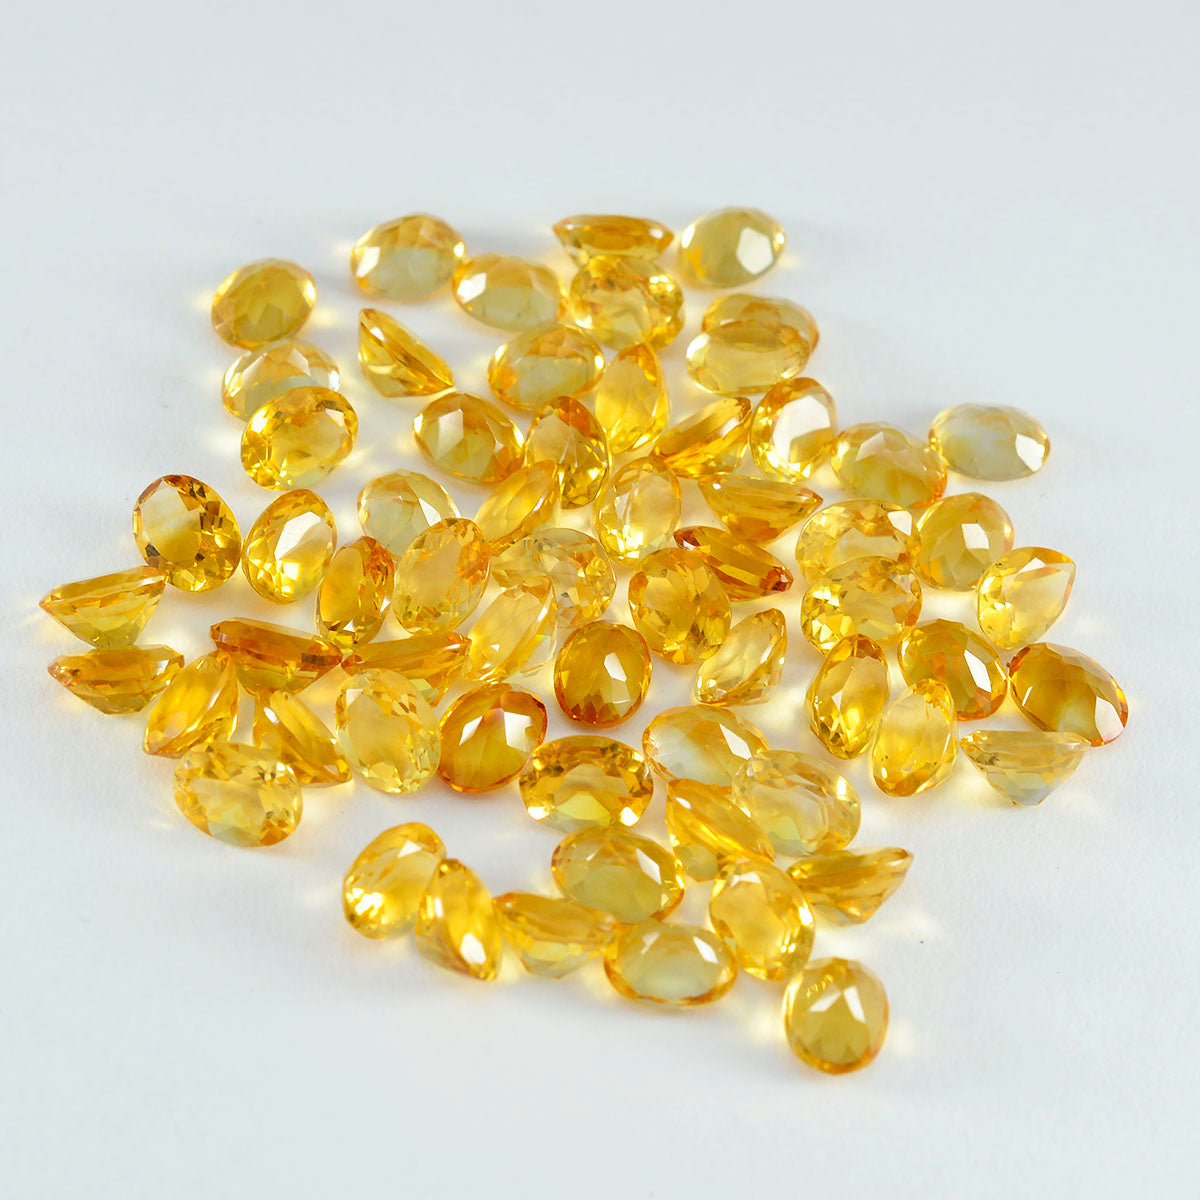 riyogems 1шт натуральный желтый цитрин ограненный 5x7 мм овальной формы красивое качество россыпь драгоценных камней